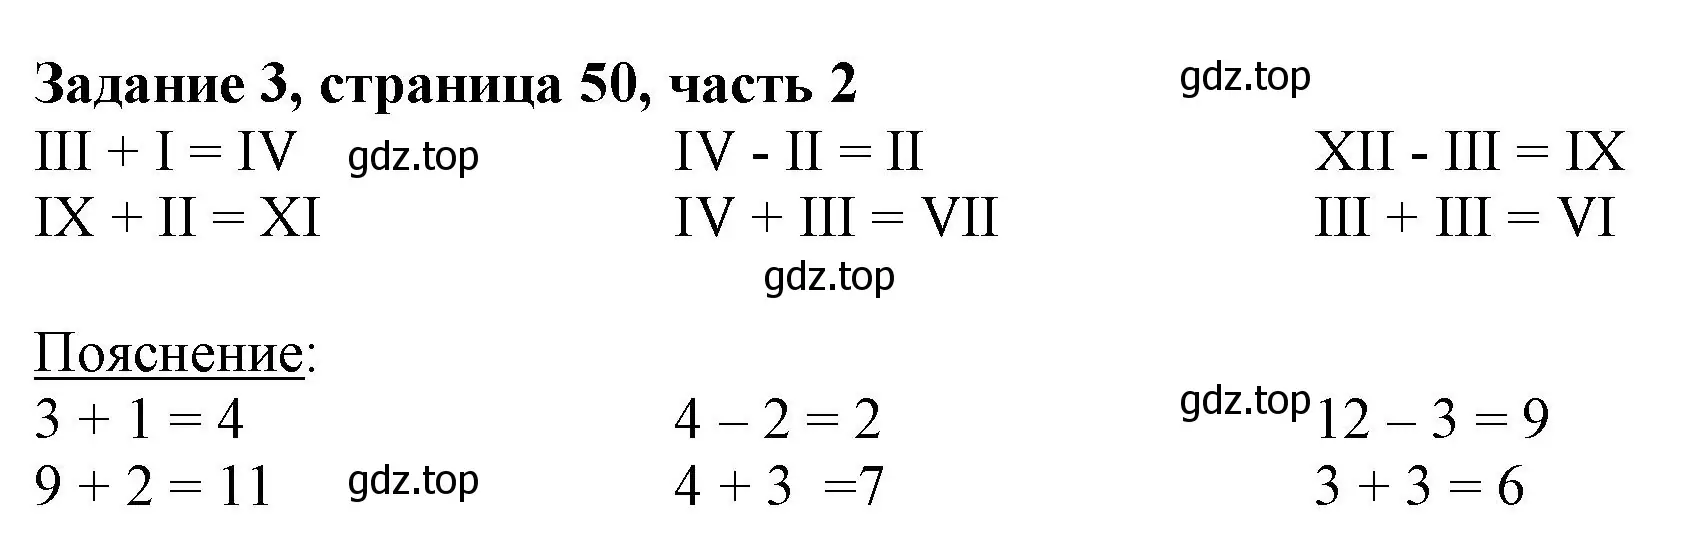 Решение номер 3 (страница 50) гдз по математике 3 класс Моро, Бантова, учебник 2 часть